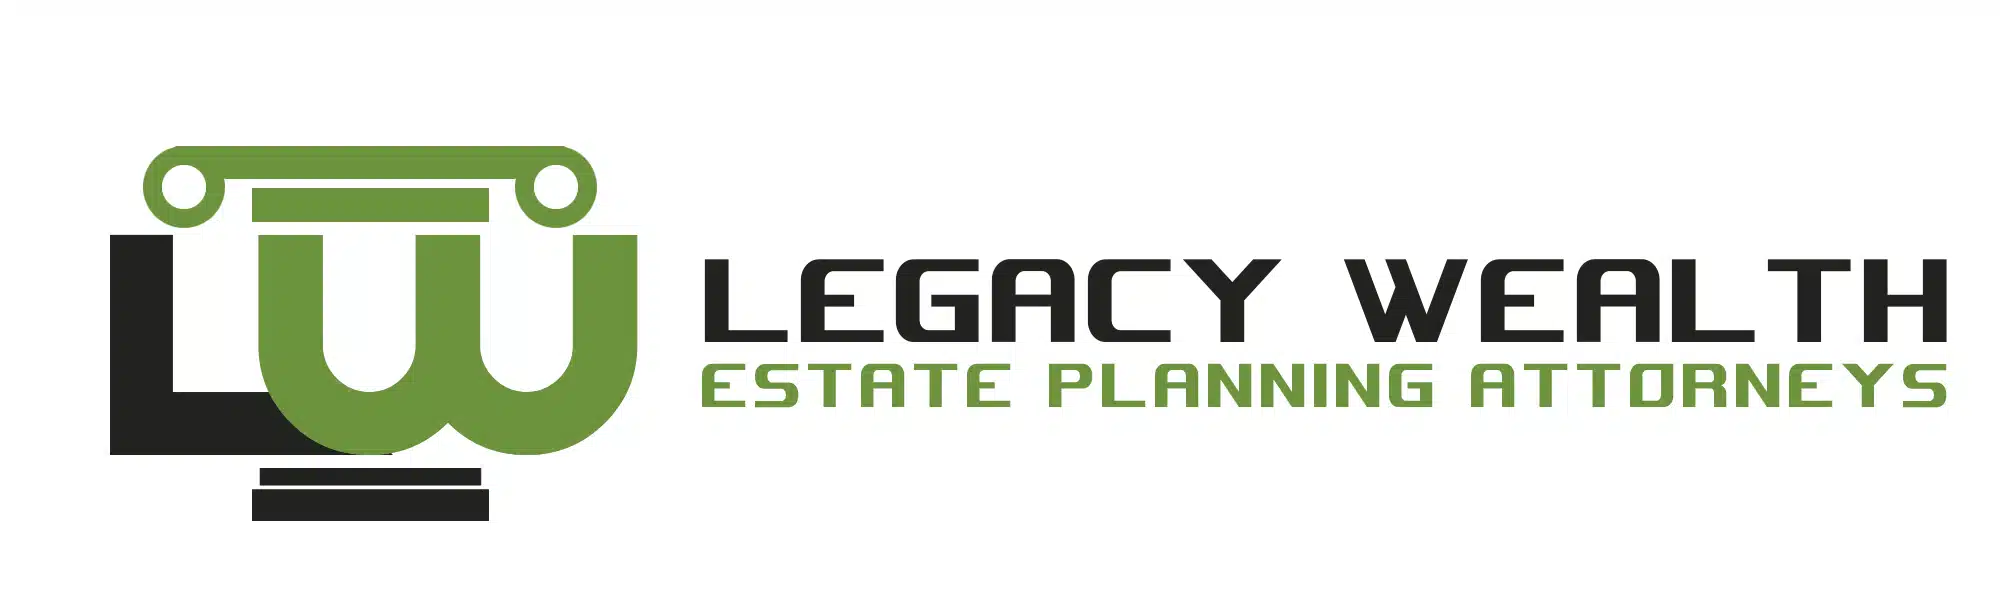 Legacy-Wealth-2.webp